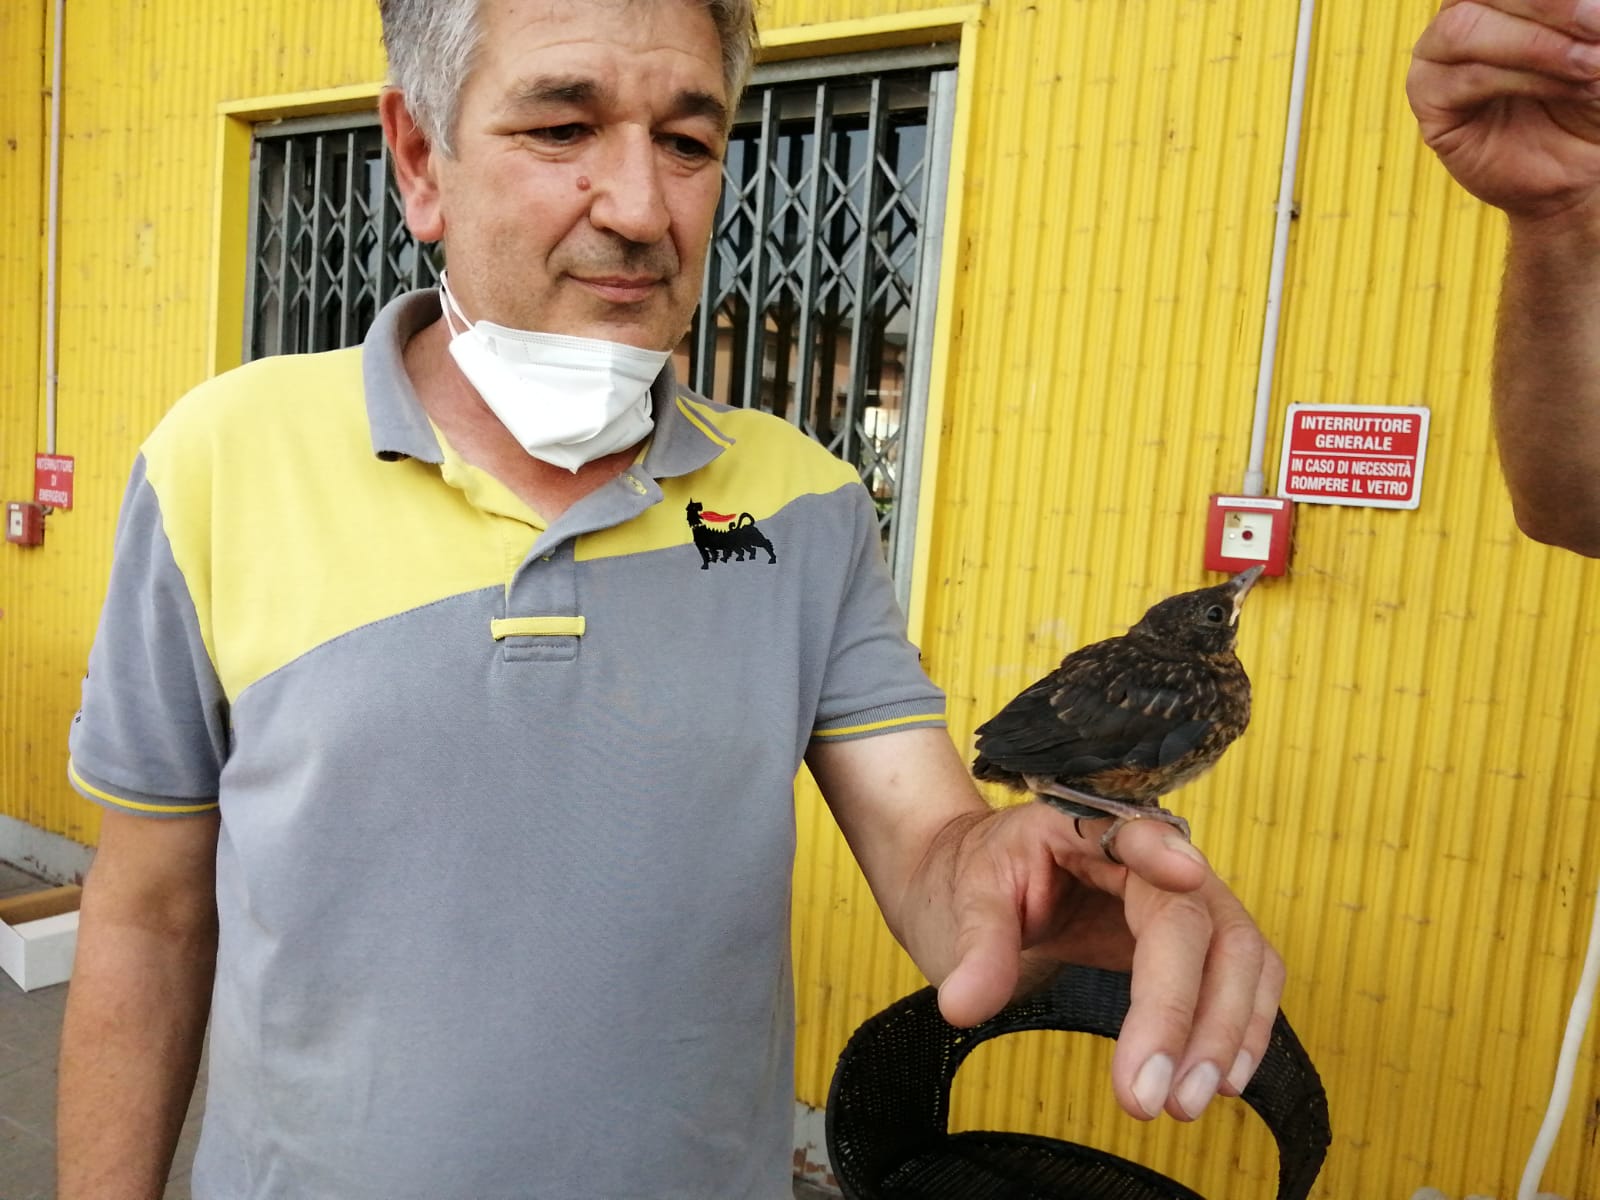 Mario Cerri distributore Agip Cassano d'Adda adottato merlo caduto dal nido